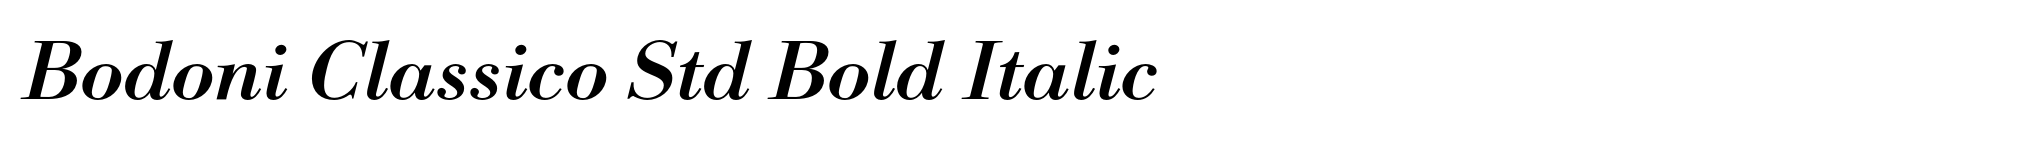 Bodoni Classico Std Bold Italic image